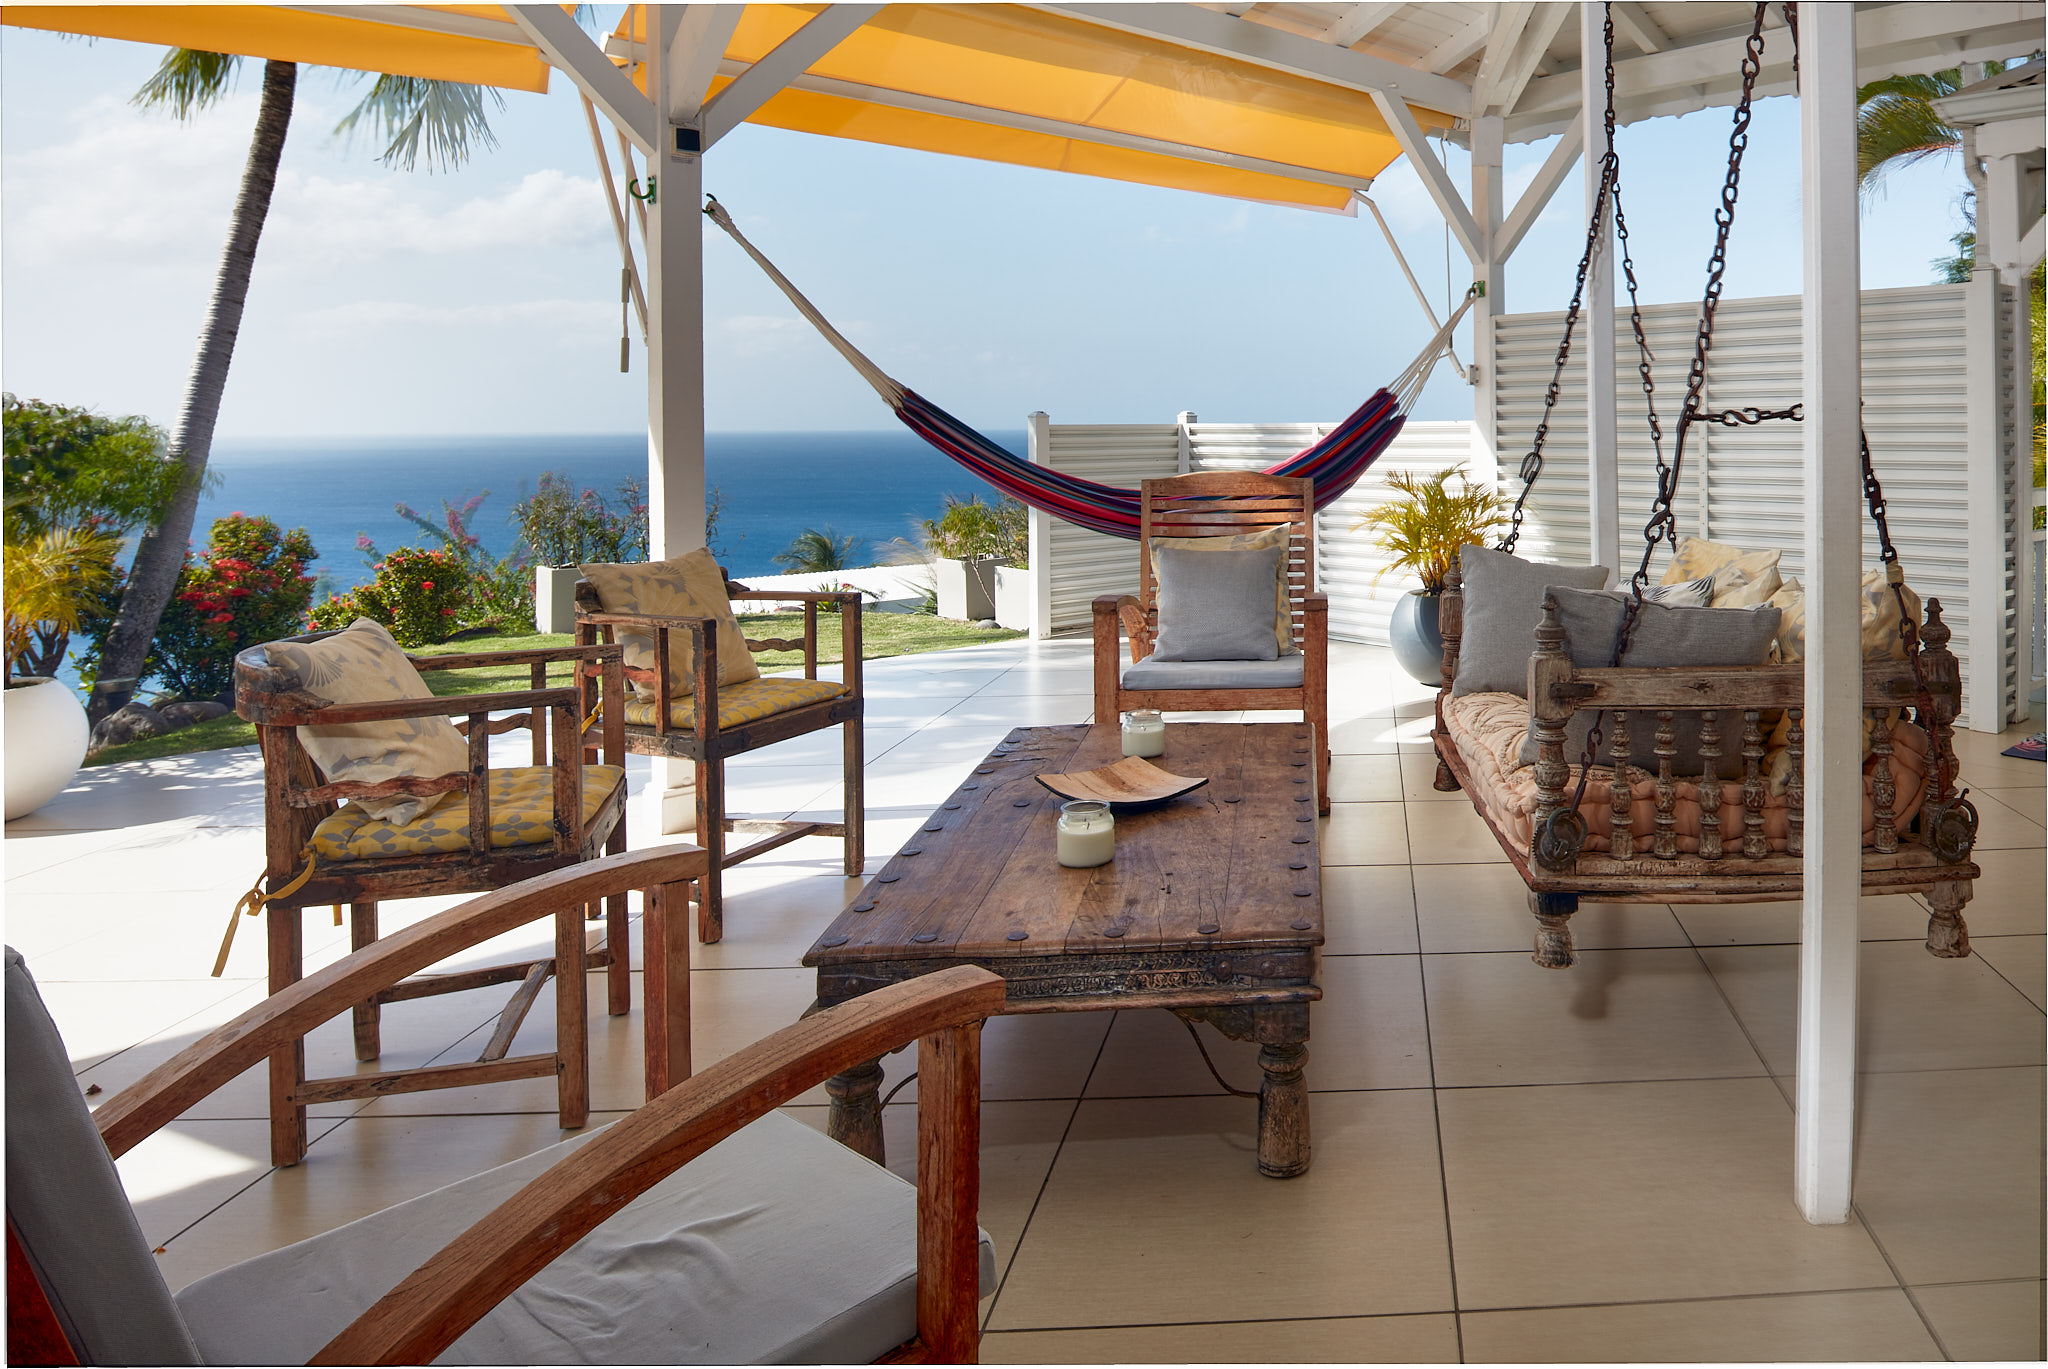 Relaxez-vous au salon terrasse, face à la mer des Caraïbes